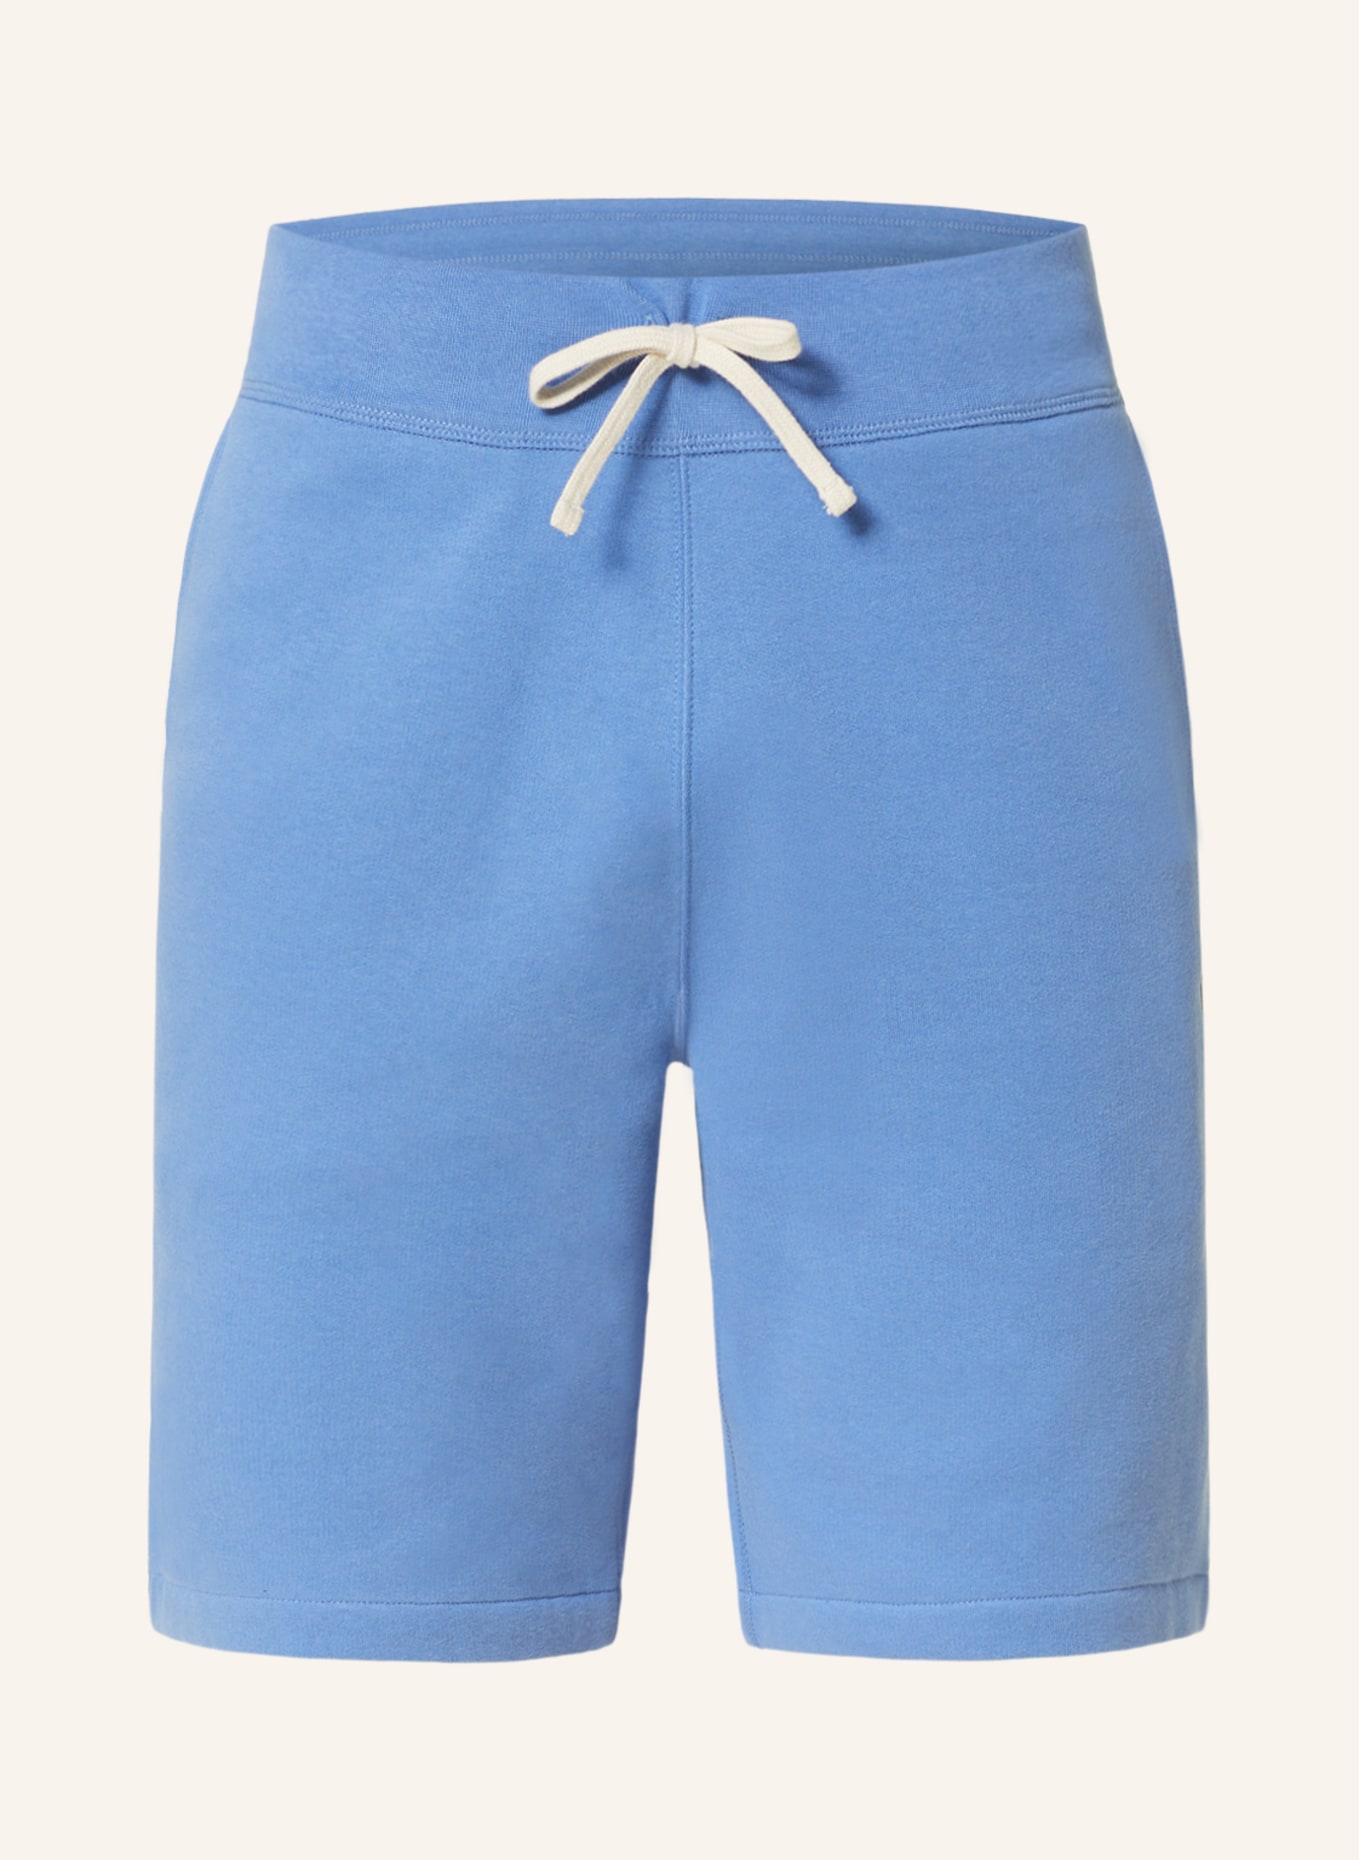 POLO RALPH LAUREN Sweat shorts, Color: LIGHT BLUE (Image 1)